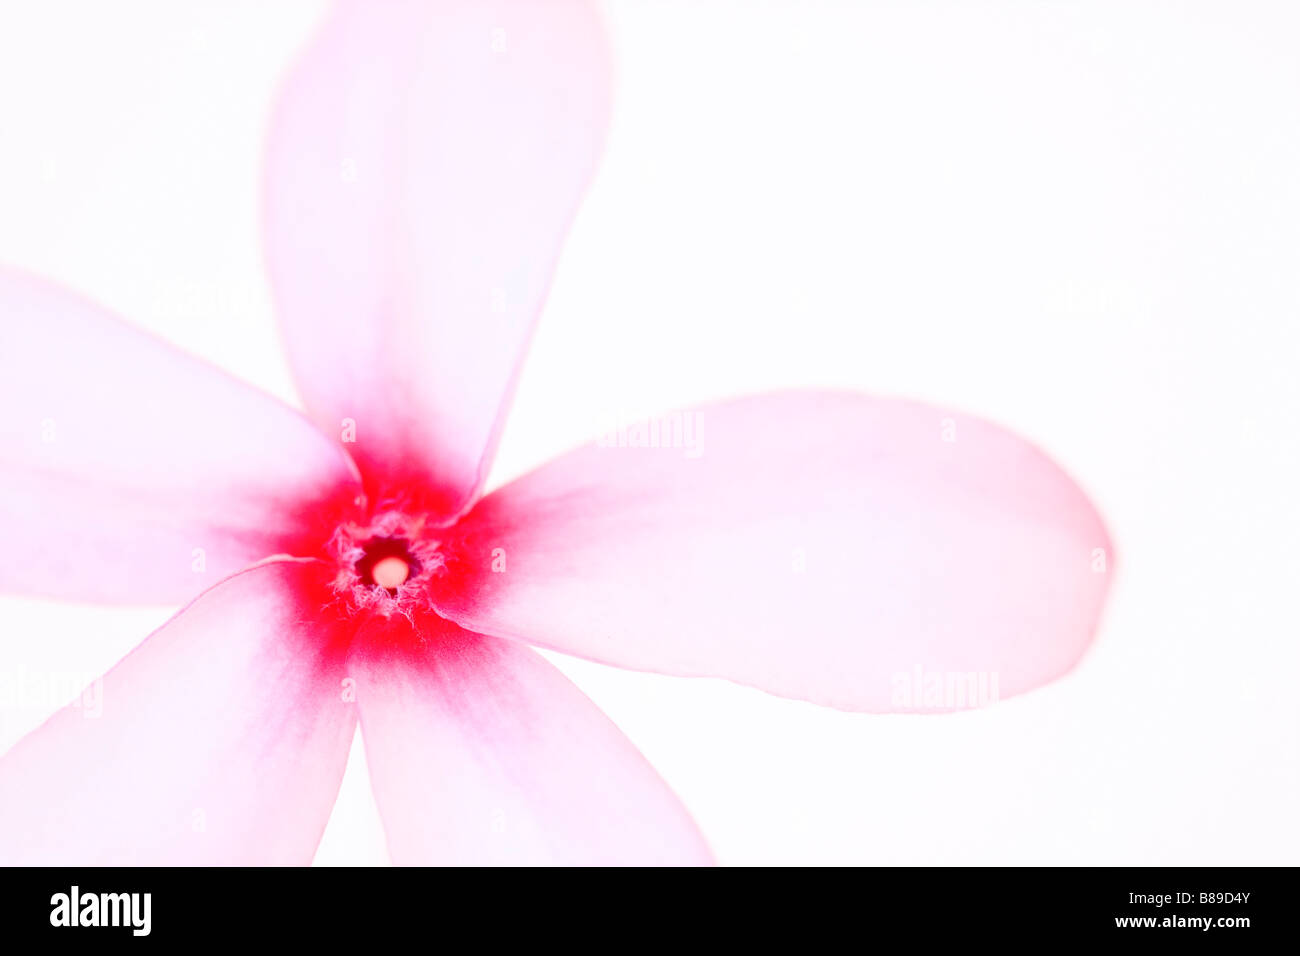 El arte abstracto de la imagen de una flor Frangipani Plumeria Rosa sobre un fondo claro. Foto de stock